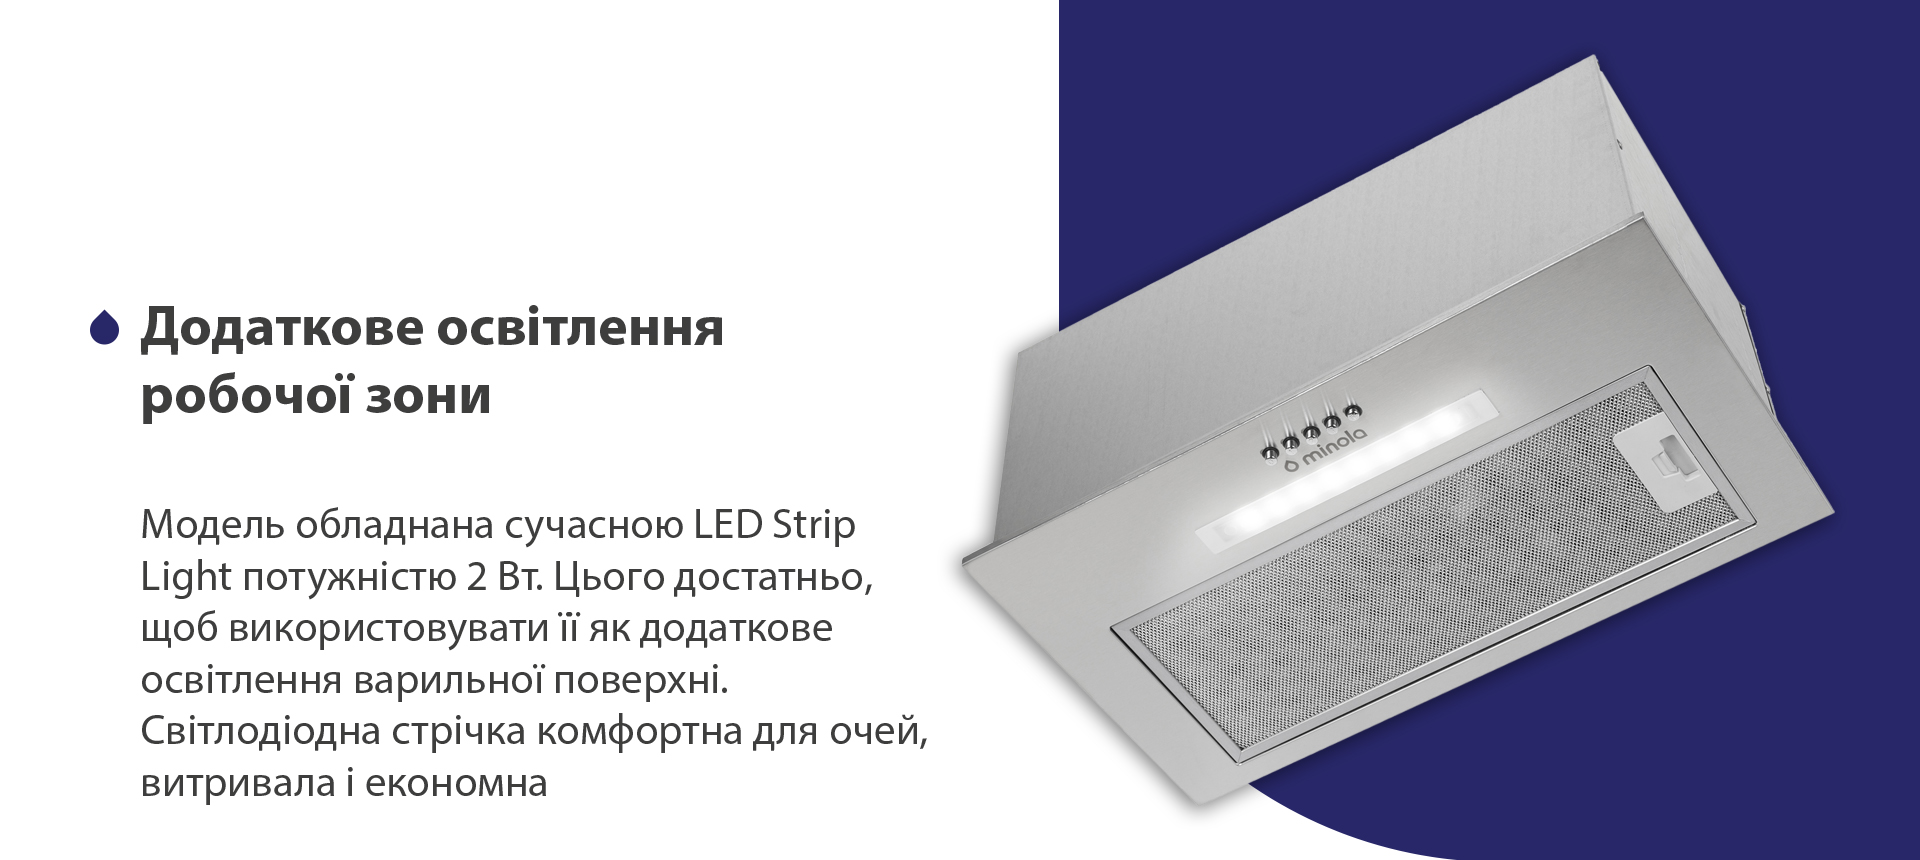 Модель обладнана сучасною LED Strip Light потужністю 2 Вт. Цього достатньо, щоб використовувати її як додаткове освітлення варильної поверхні. Світлодіодна стрічка комфортна для очей, витривала та економна